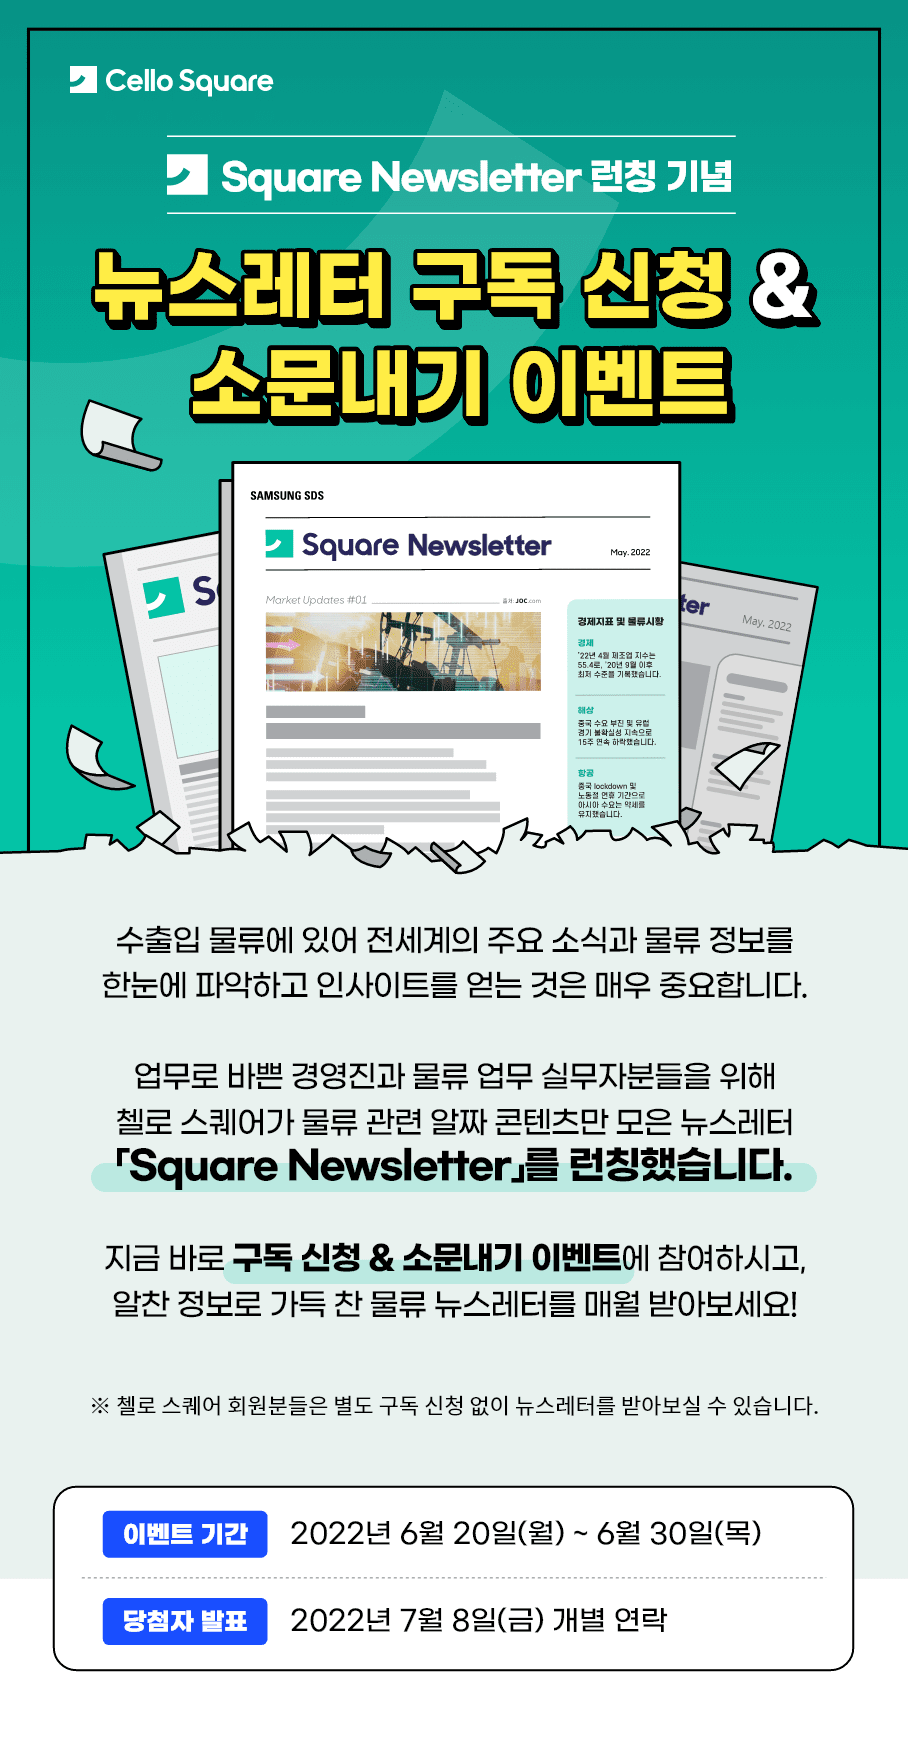 뉴스레터 구독 신청 & 소문내기 이벤트